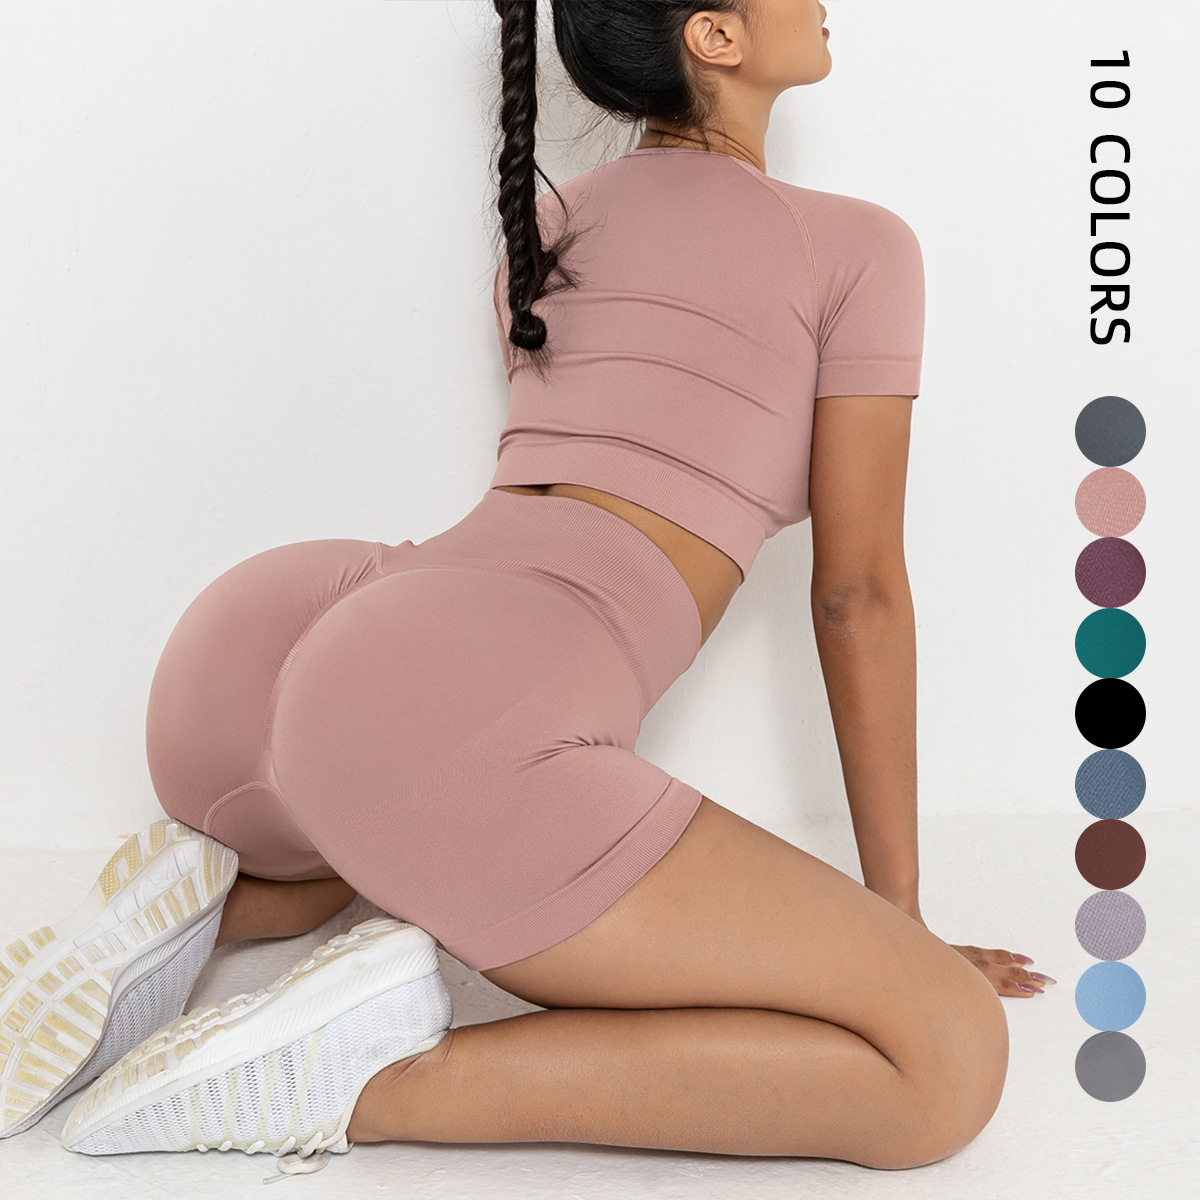 फैशन-फ़ॉरवर्ड फ़िटनेस उत्साही के लिए नमी सोखने वाली योग पैंट |झिहुई